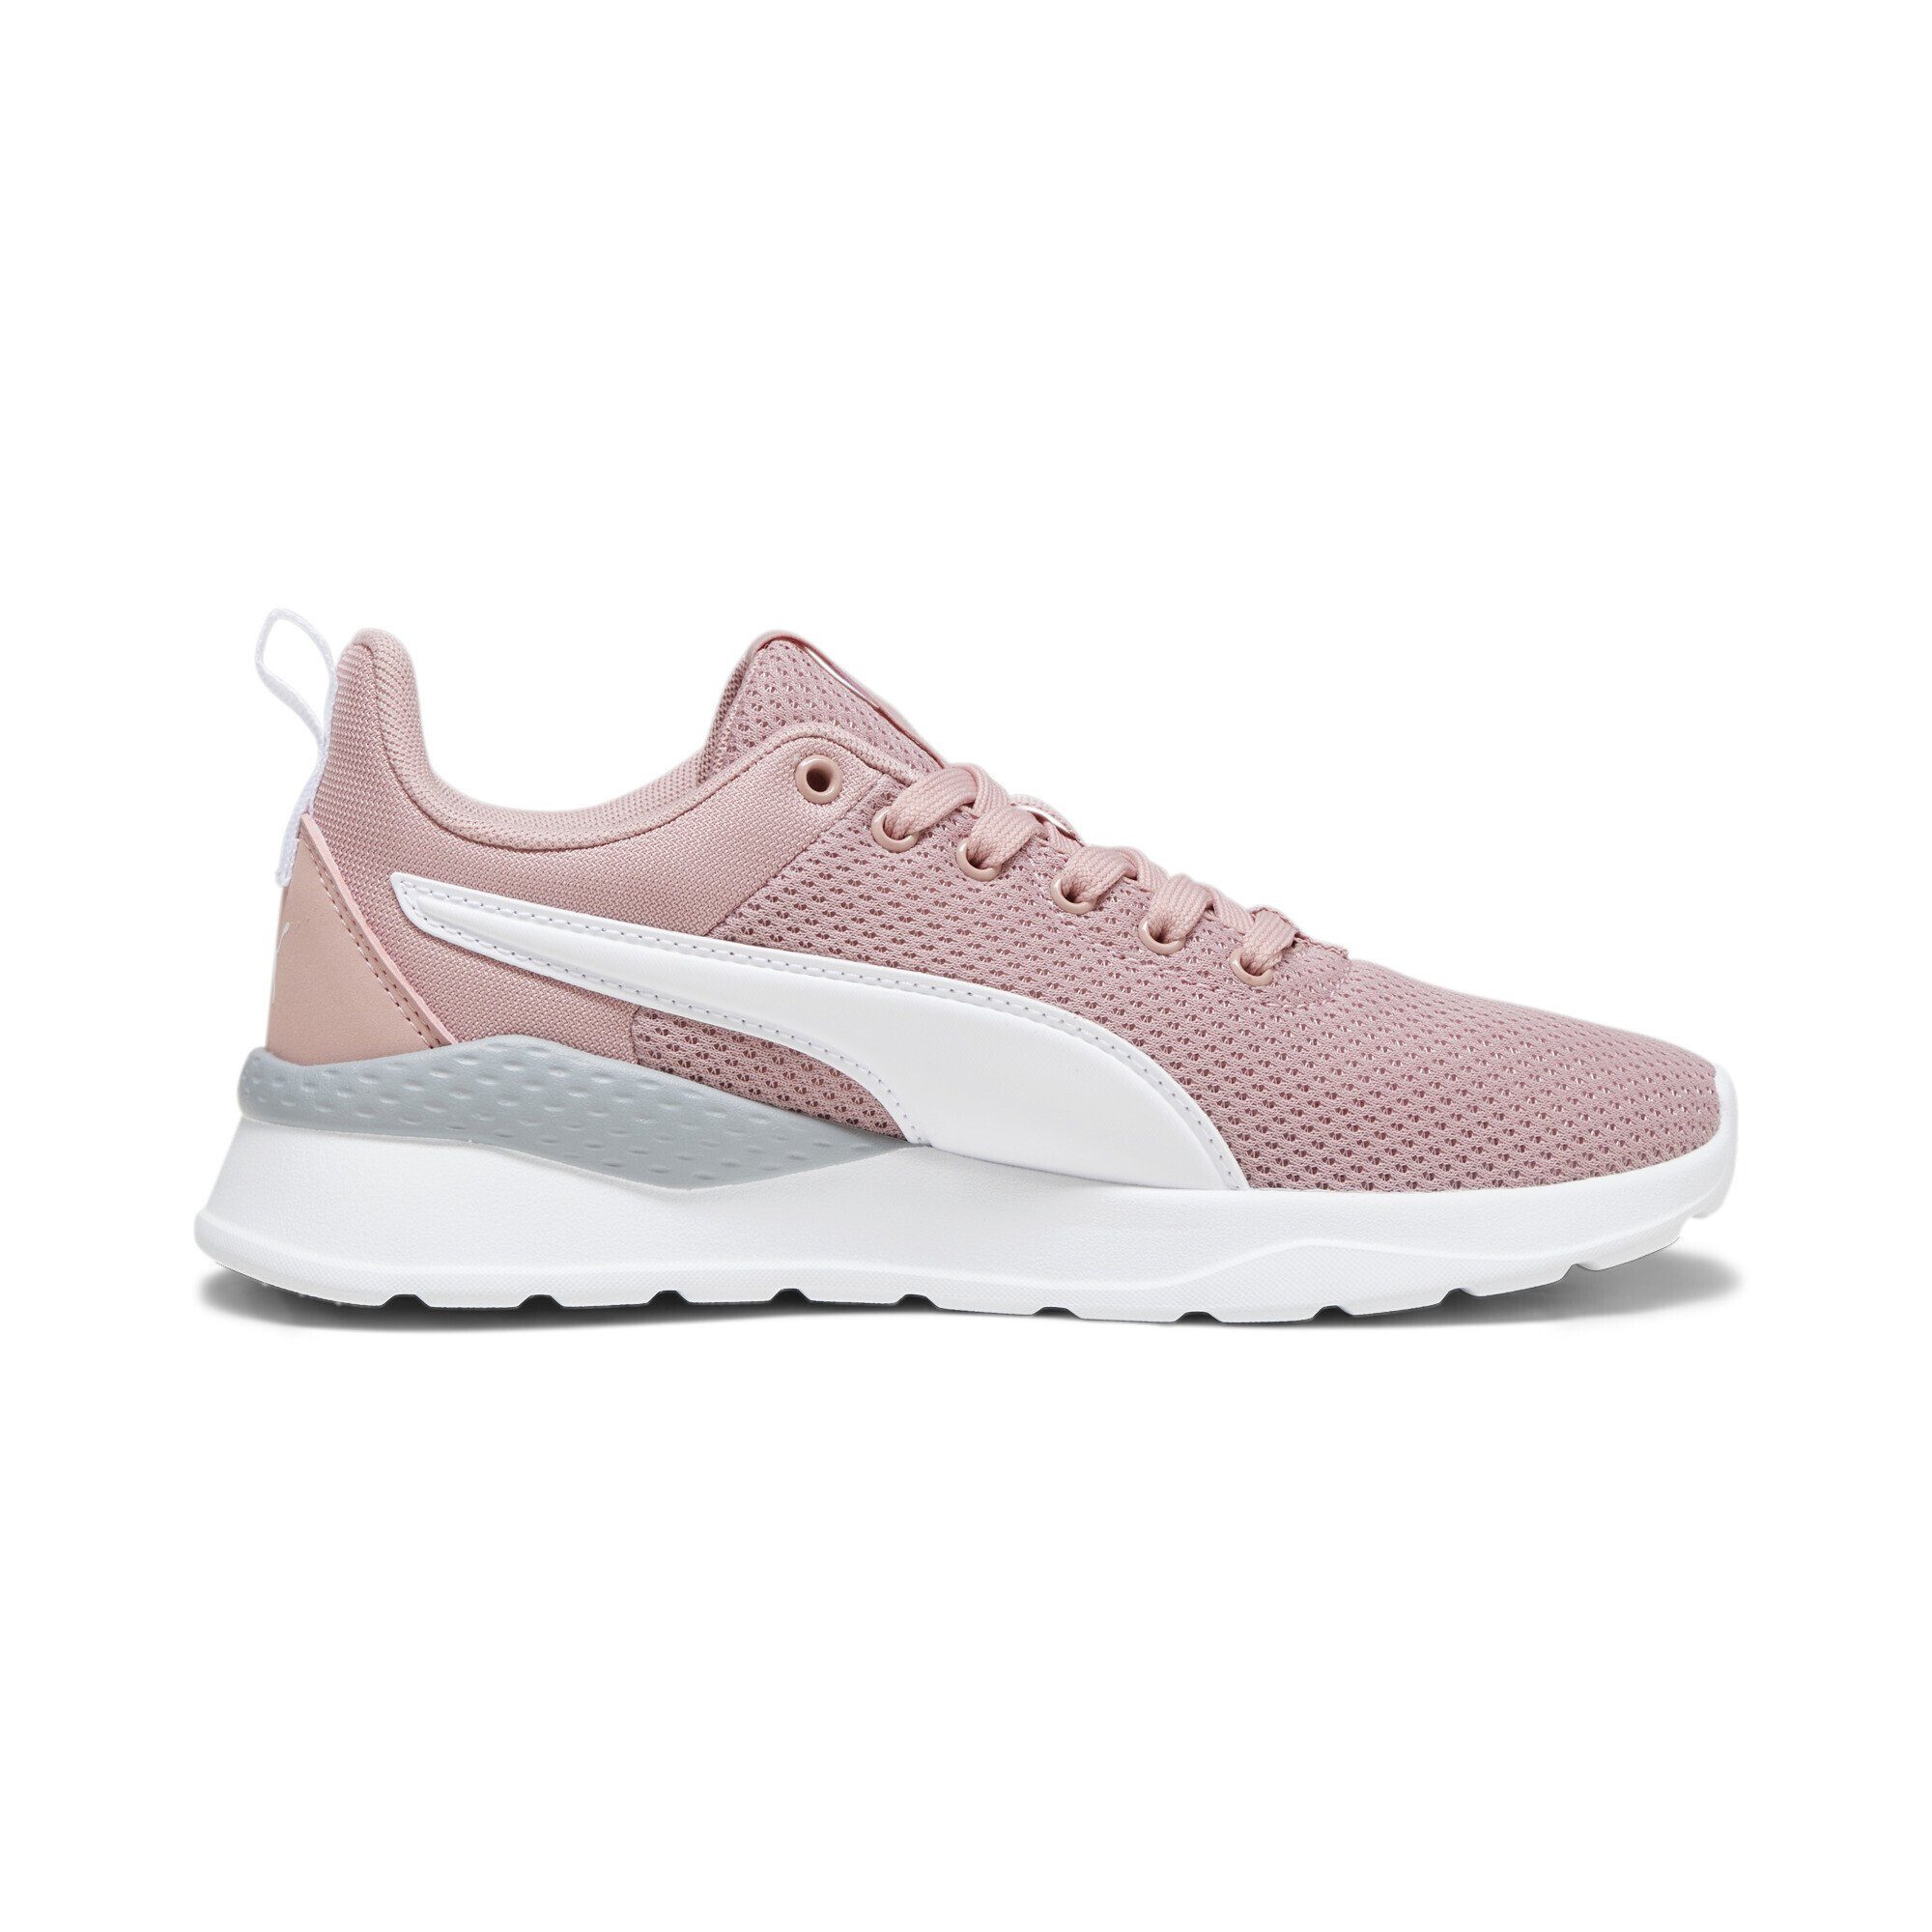 PUMA Anzarun Lite Sneakers Jugendliche Smoothie Laufschuh Peach Pink White